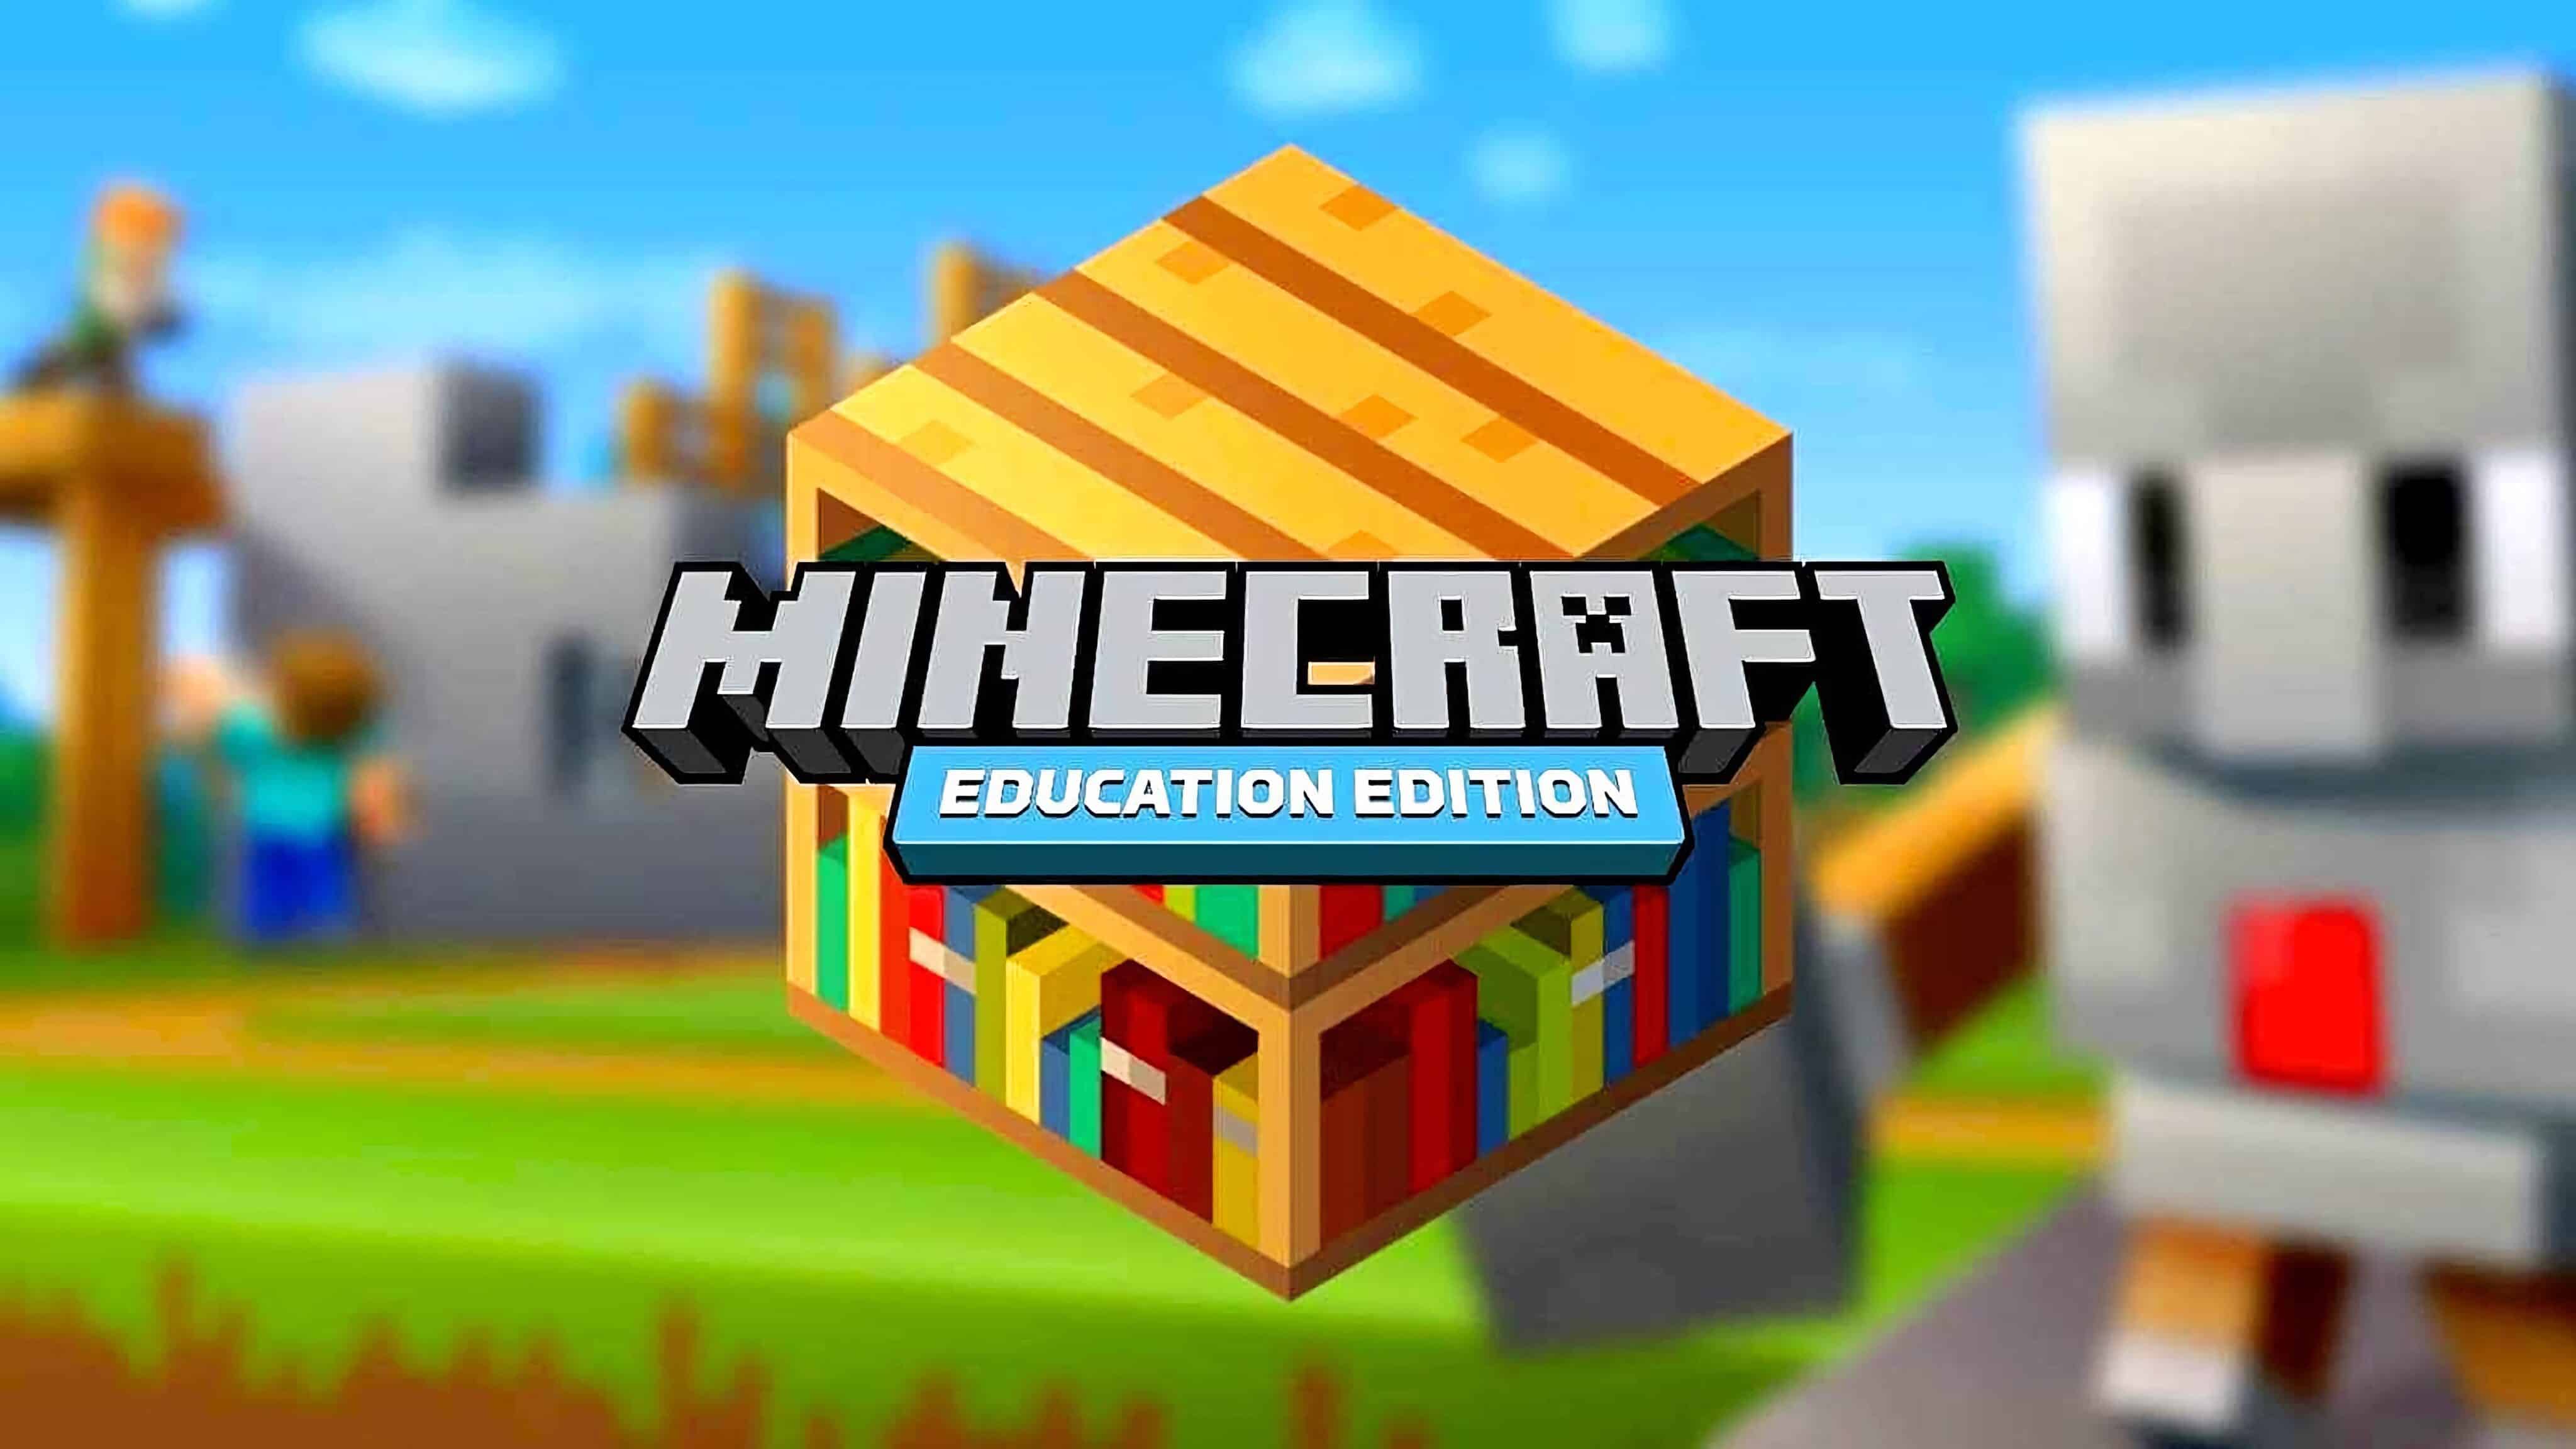 Minecraft: Microsoft lança plataforma educacional com o jogo